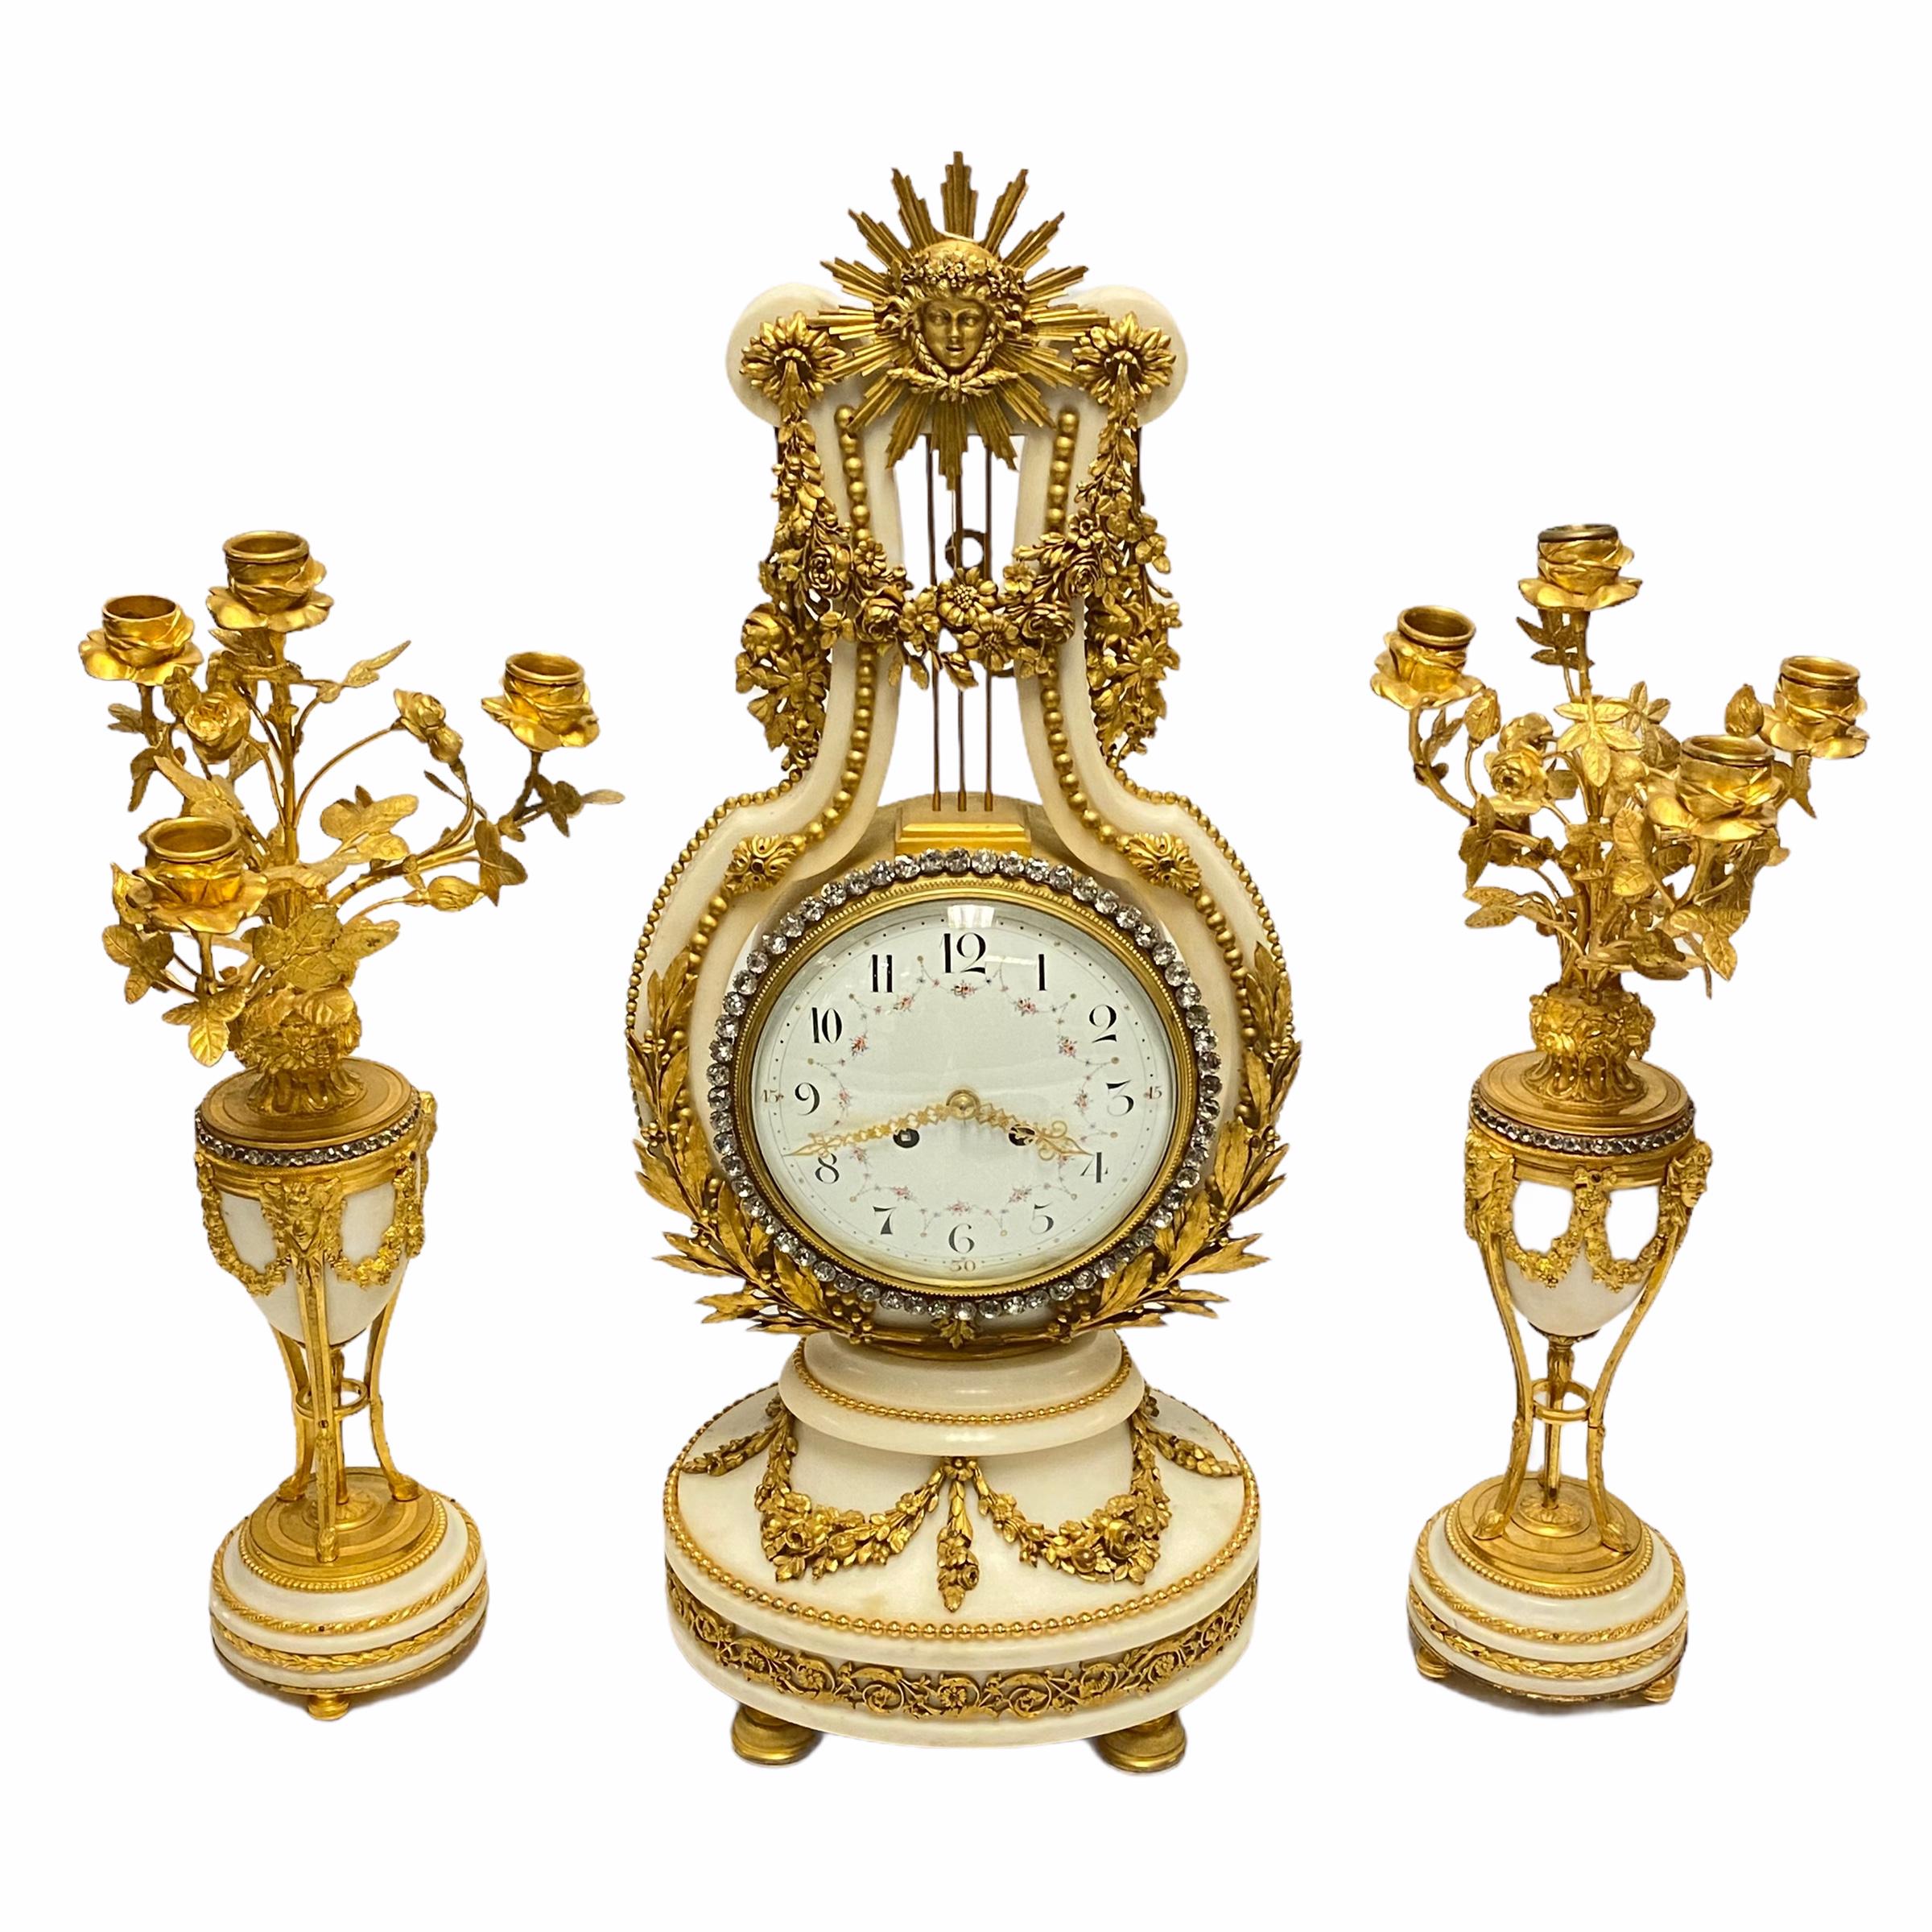 Très belle suite d'horloges et de garnitures françaises du XIXe siècle. Whiting comprenant une horloge de cheminée en marbre blanc montée en bronze doré et une paire de candélabres en bronze doré et marbre blanc. La pendule est décorée de diamants